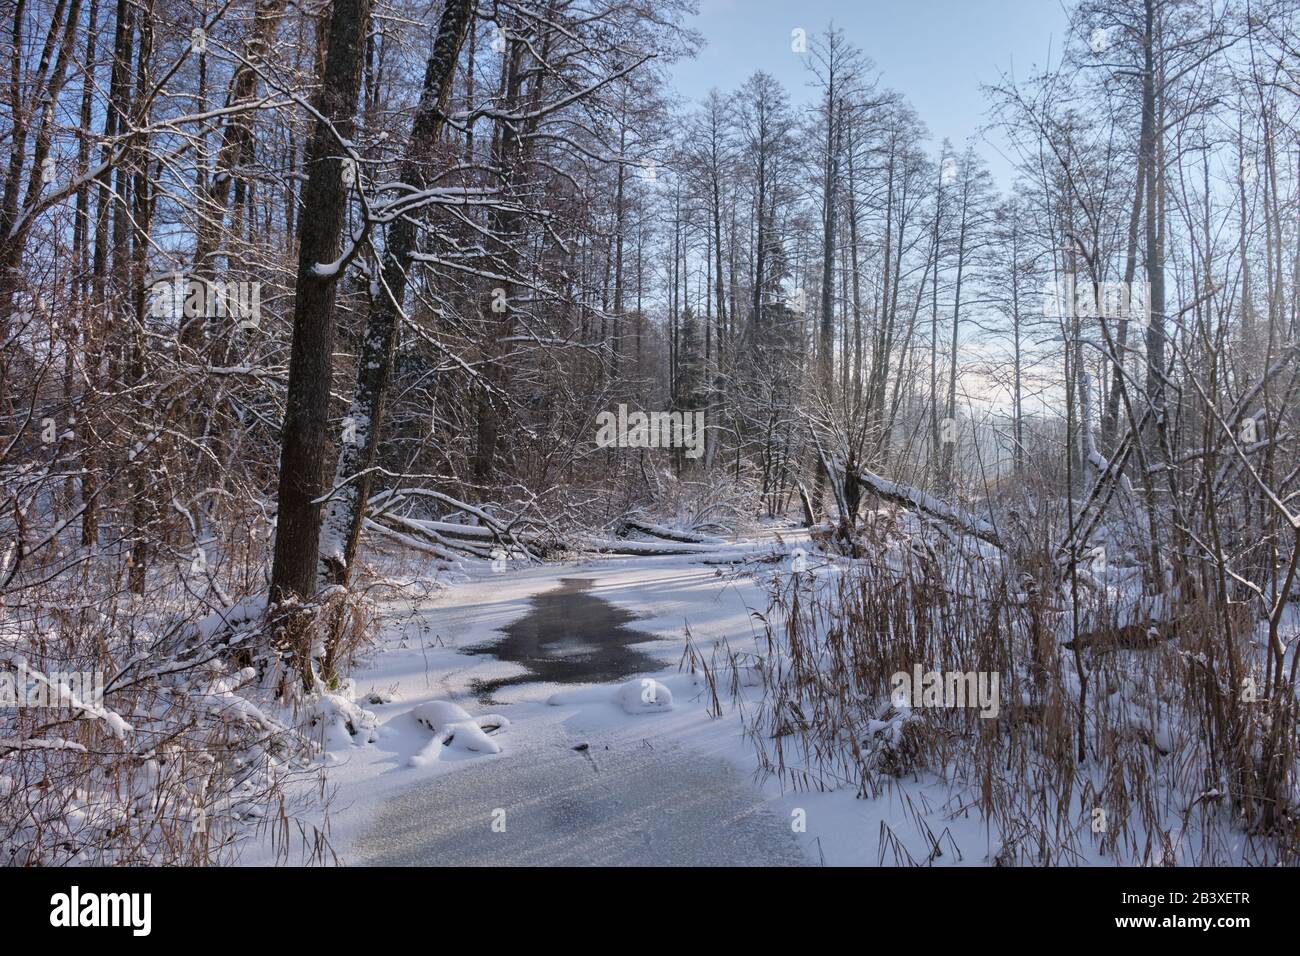 Paysage d'hiver de la rivière gelée Lesna en journée ensoleillée avec de la neige à roseau sèche enveloppée en premier plan, région de Podlasie, Pologne, Europe Banque D'Images